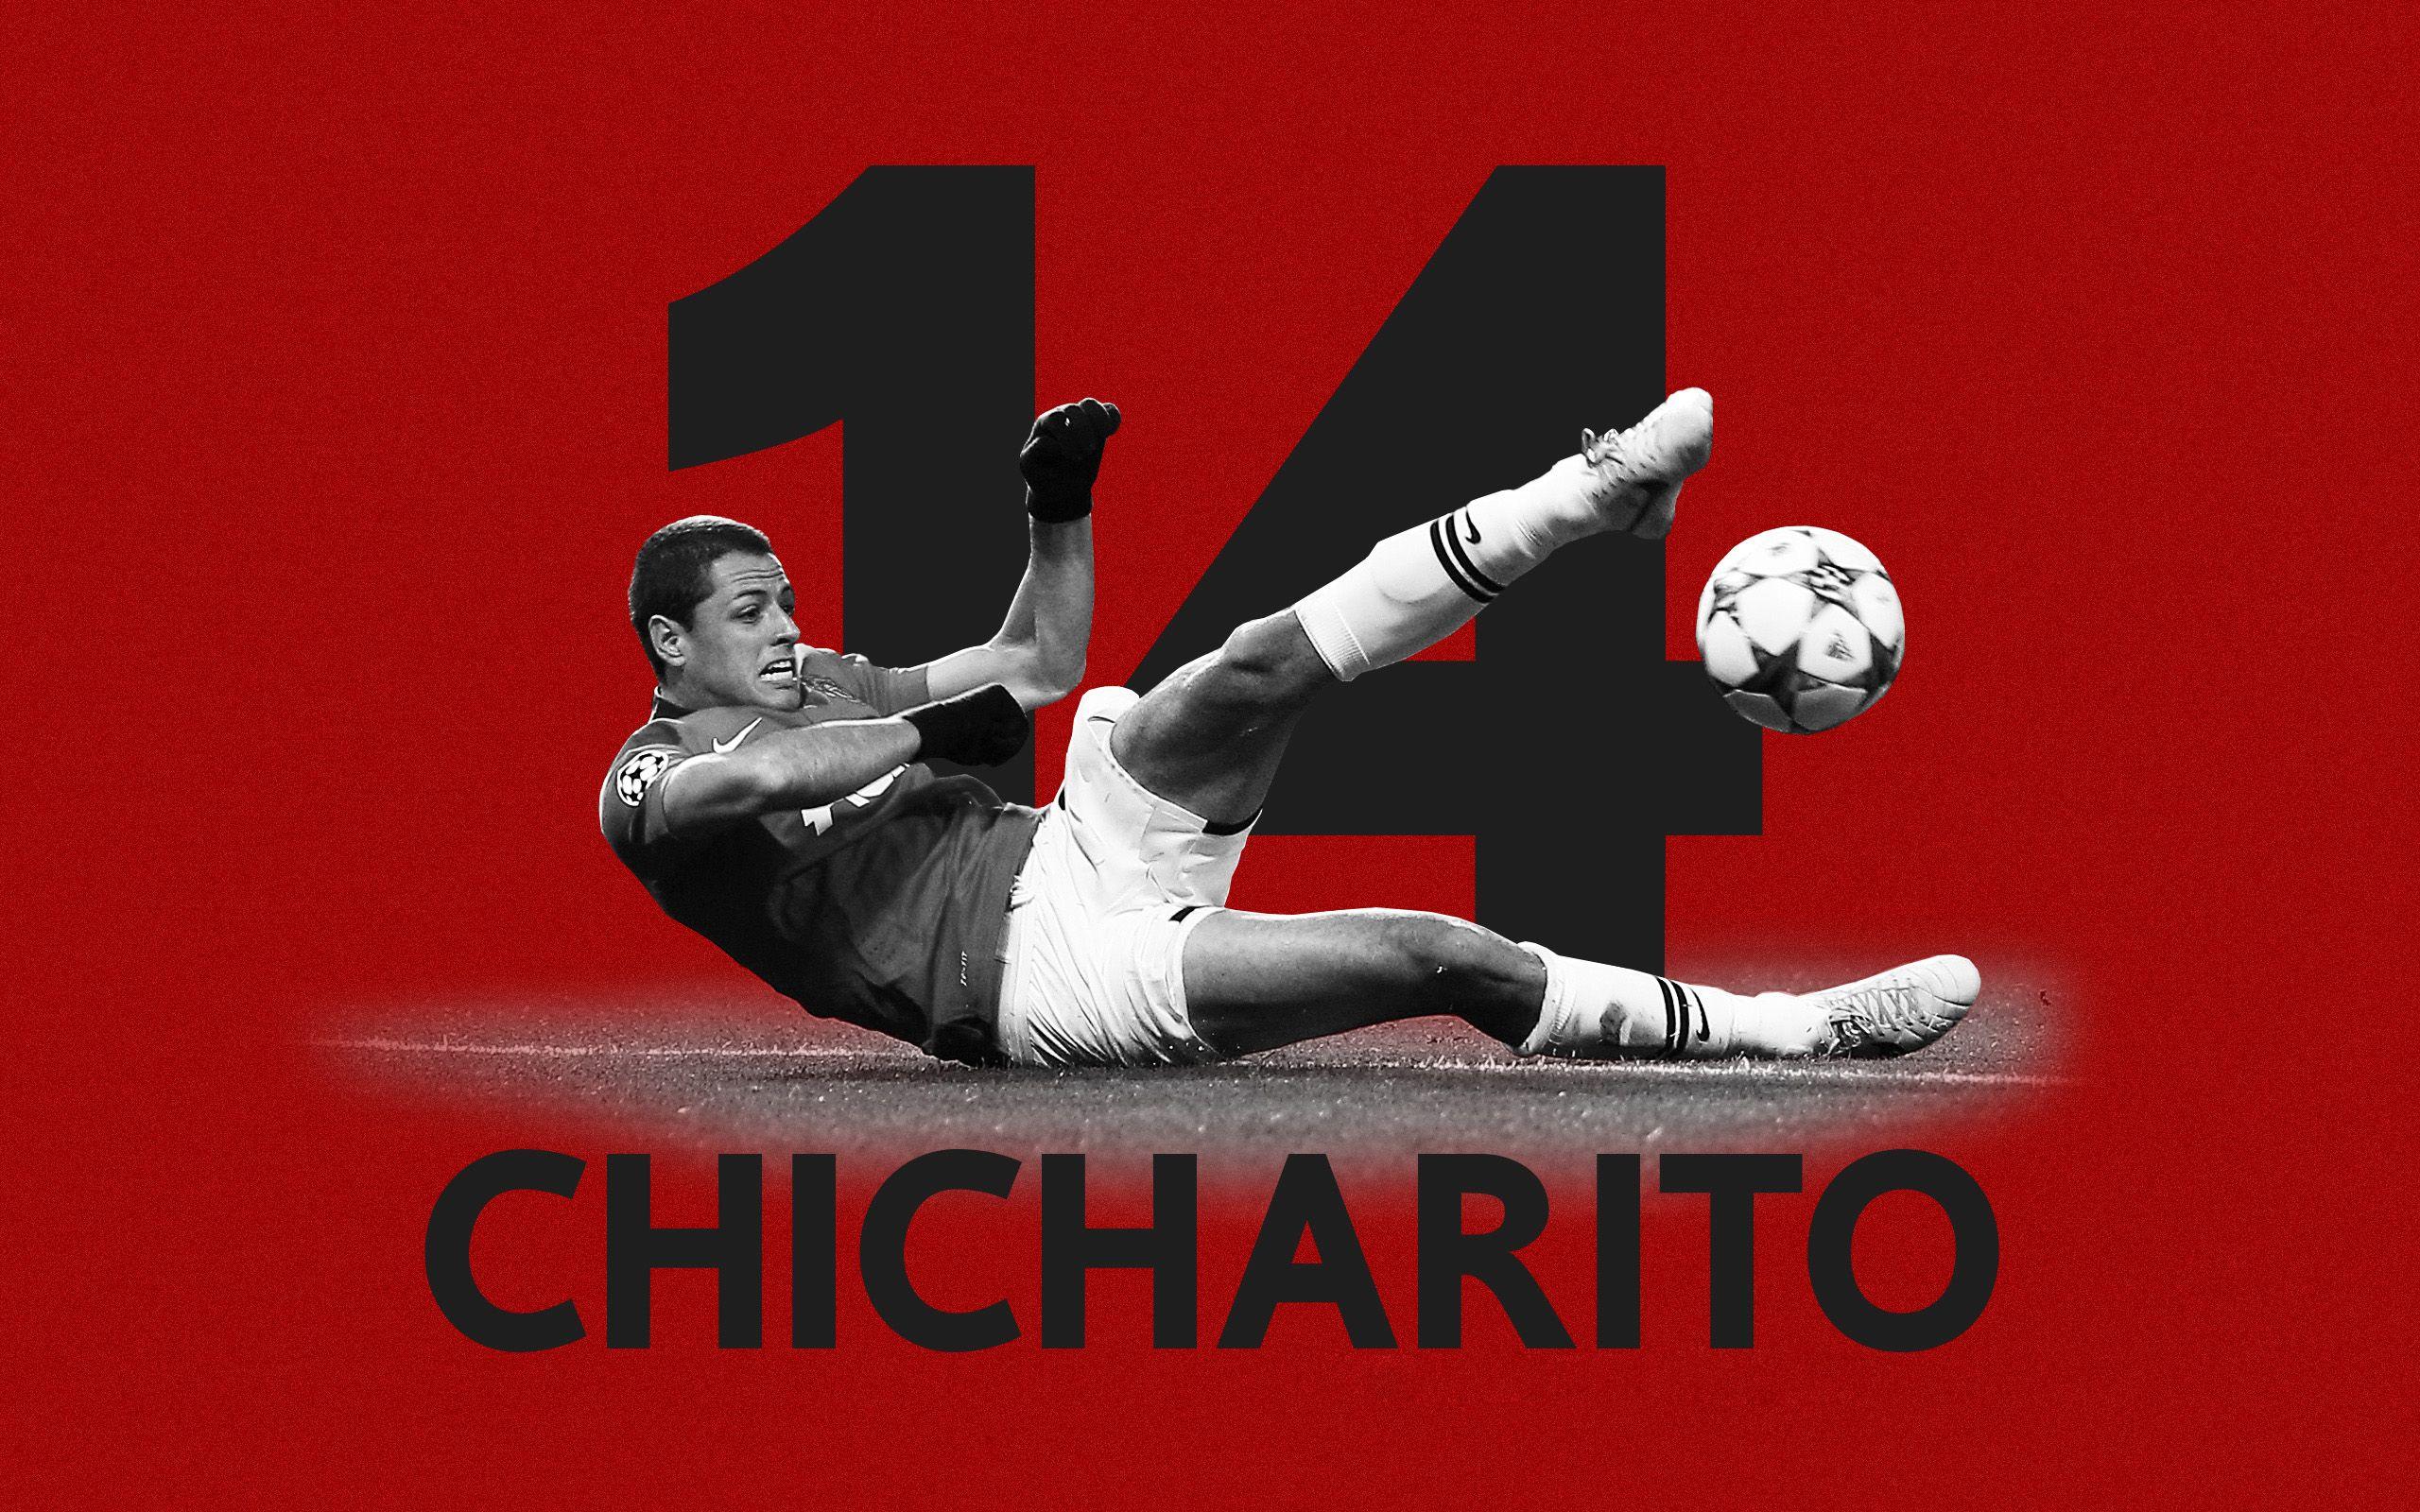 Chicharito Logo - Chicharito Background Free Download